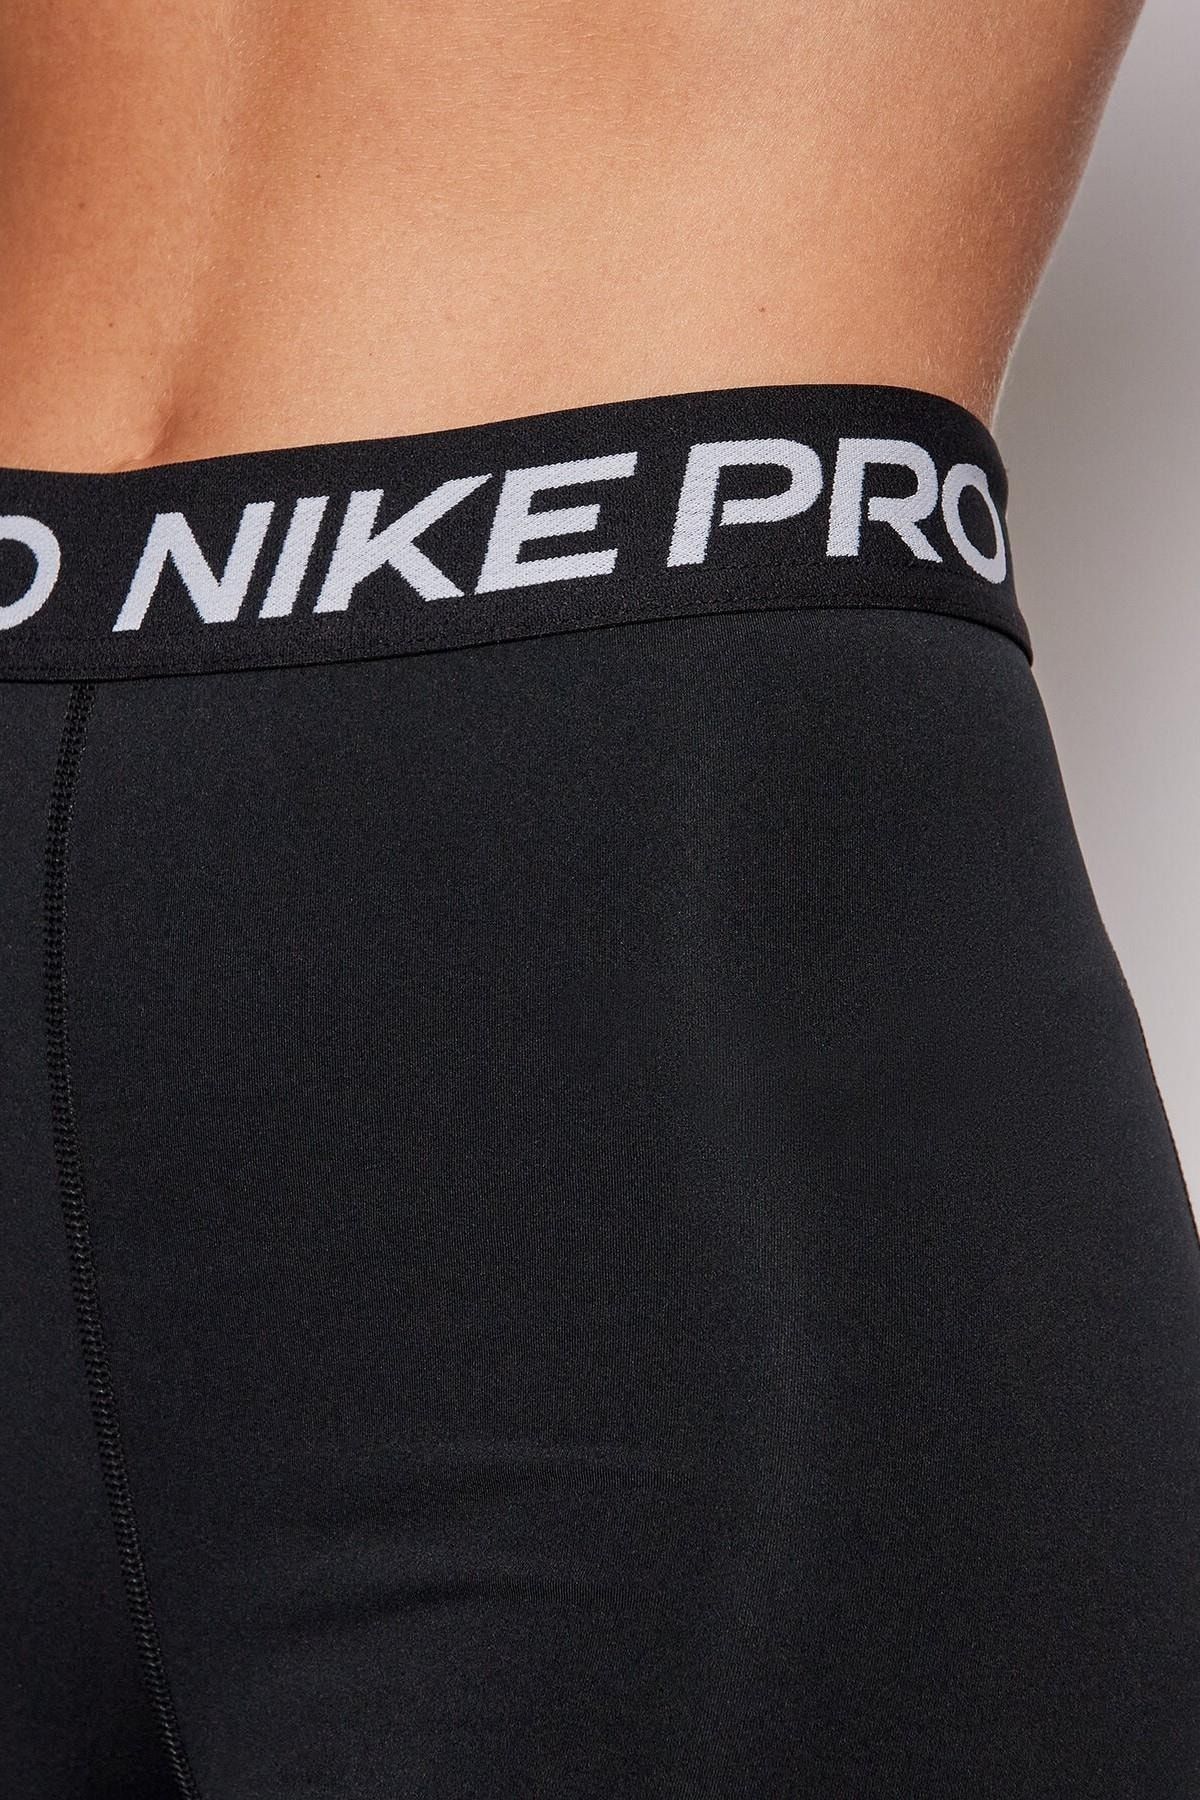 Nike Pro 365 Mid-rise Crop Training Legging Tight Fit Toparlayıcı Siyah Tayt  Fiyatı, Yorumları - Trendyol